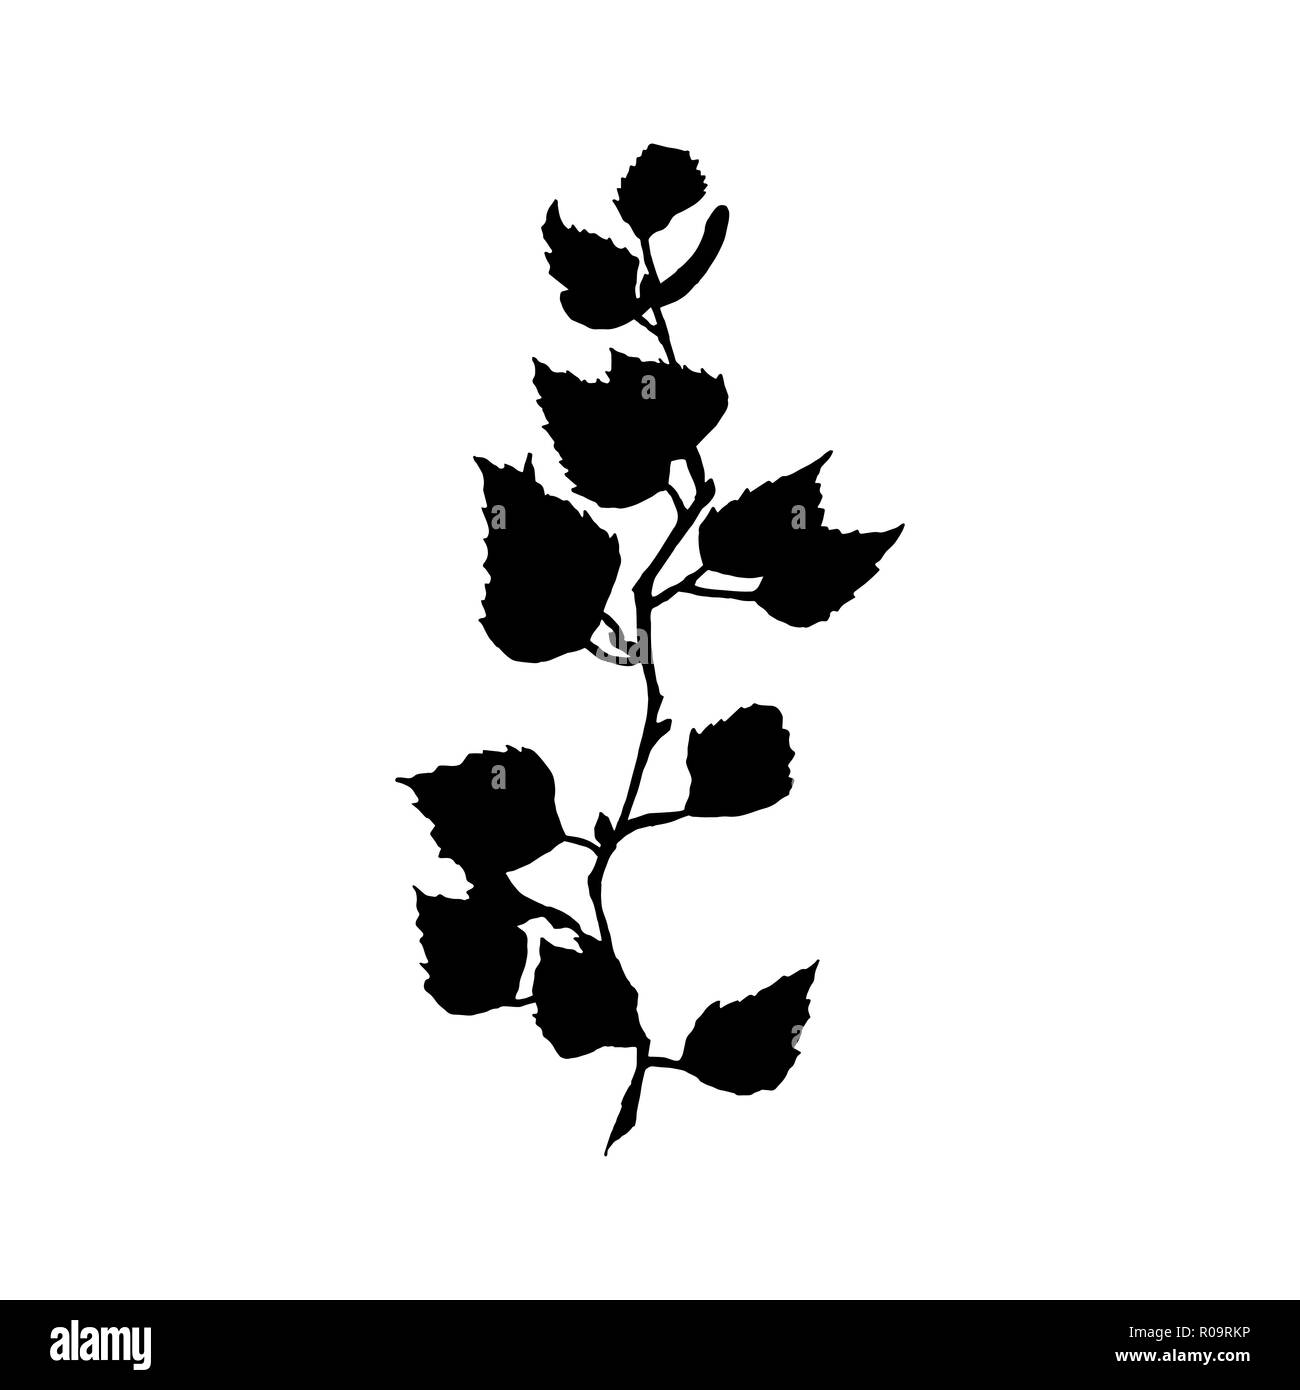 Birke Abbildung. Schwarze Silhouette des Baumes Zweig mit Blättern und Samen auf weißem Hintergrund. Birke Filiale Hand gezeichnet Herbst Thema. Isolierte Vektor Stock Vektor